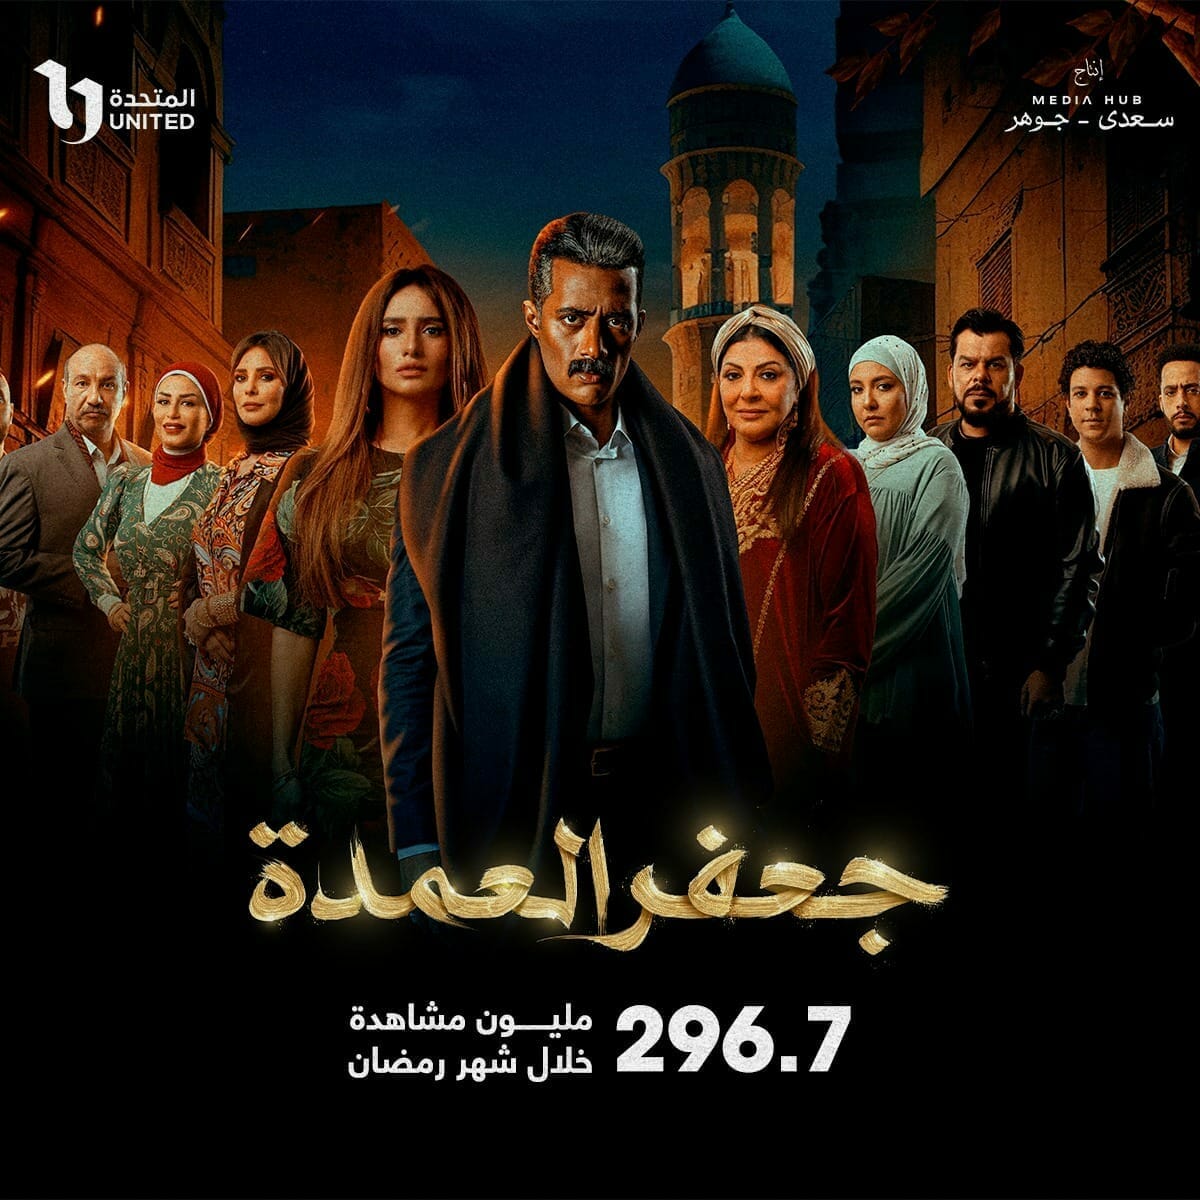 جعفر العمدة يتخطى 296.7 مليون مشاهدة خلال شهر رمضان